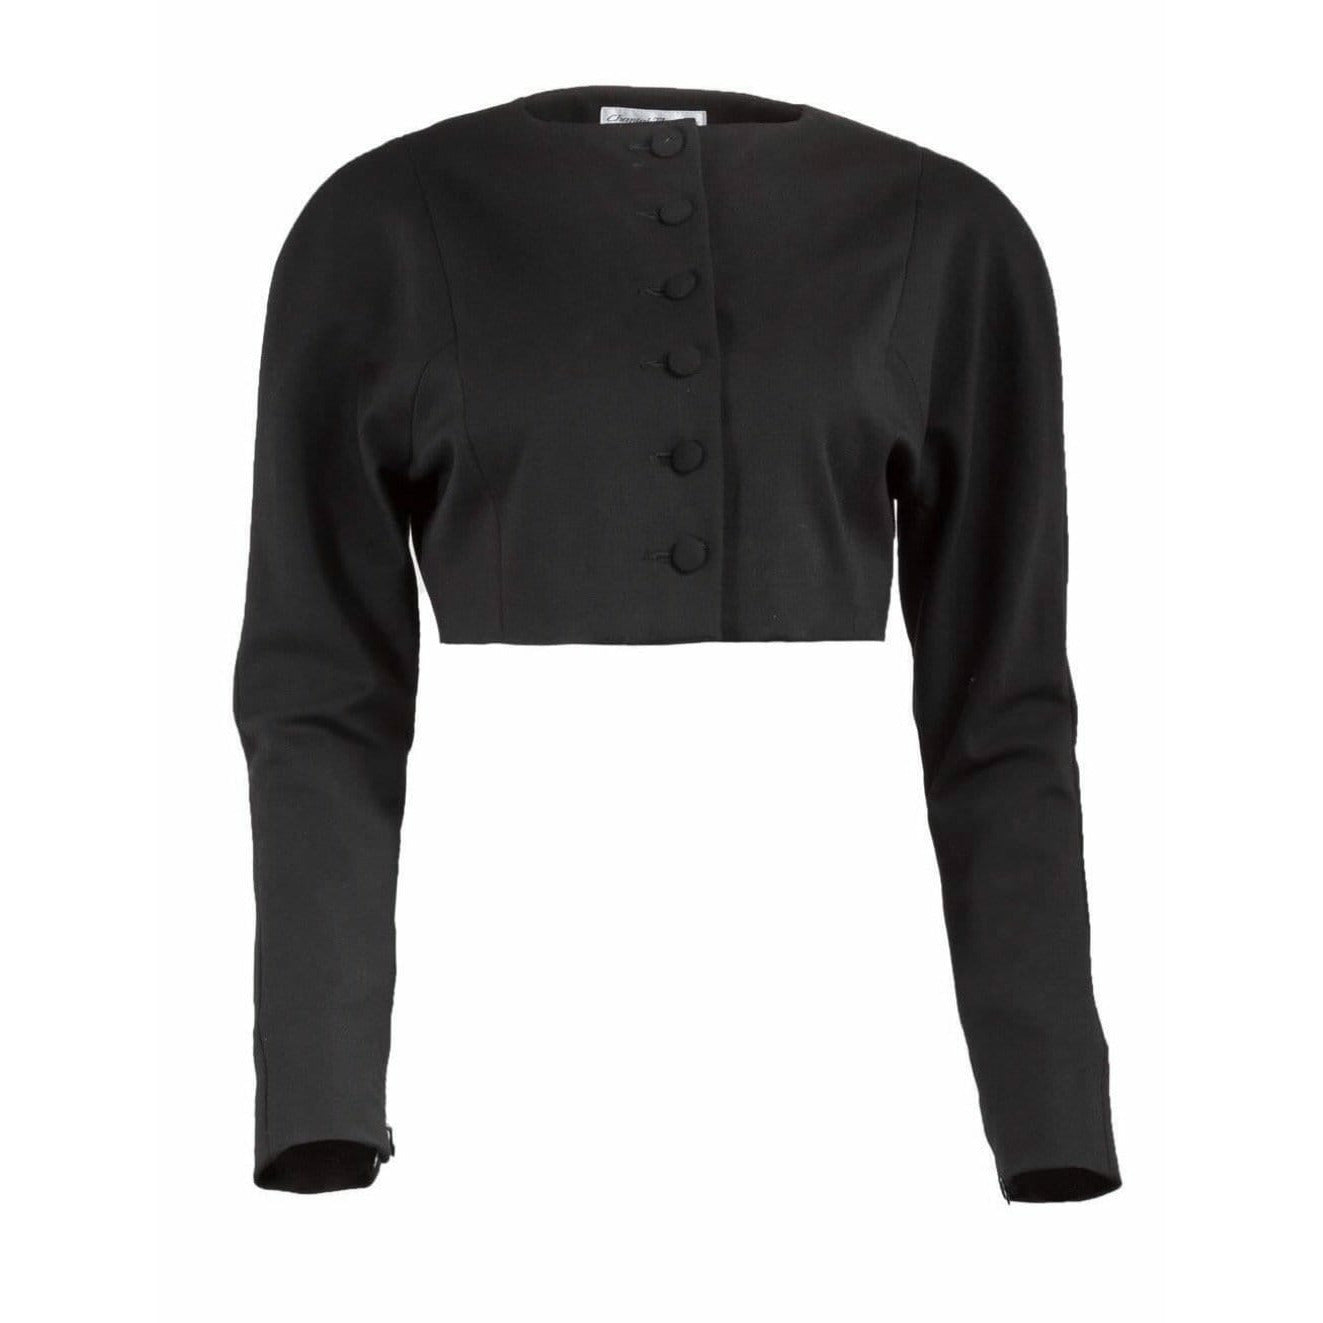 Coats & Jackets chantal-thomass-cropped-black-button-up-jacket Chantal Thomass Dark Slate Gray